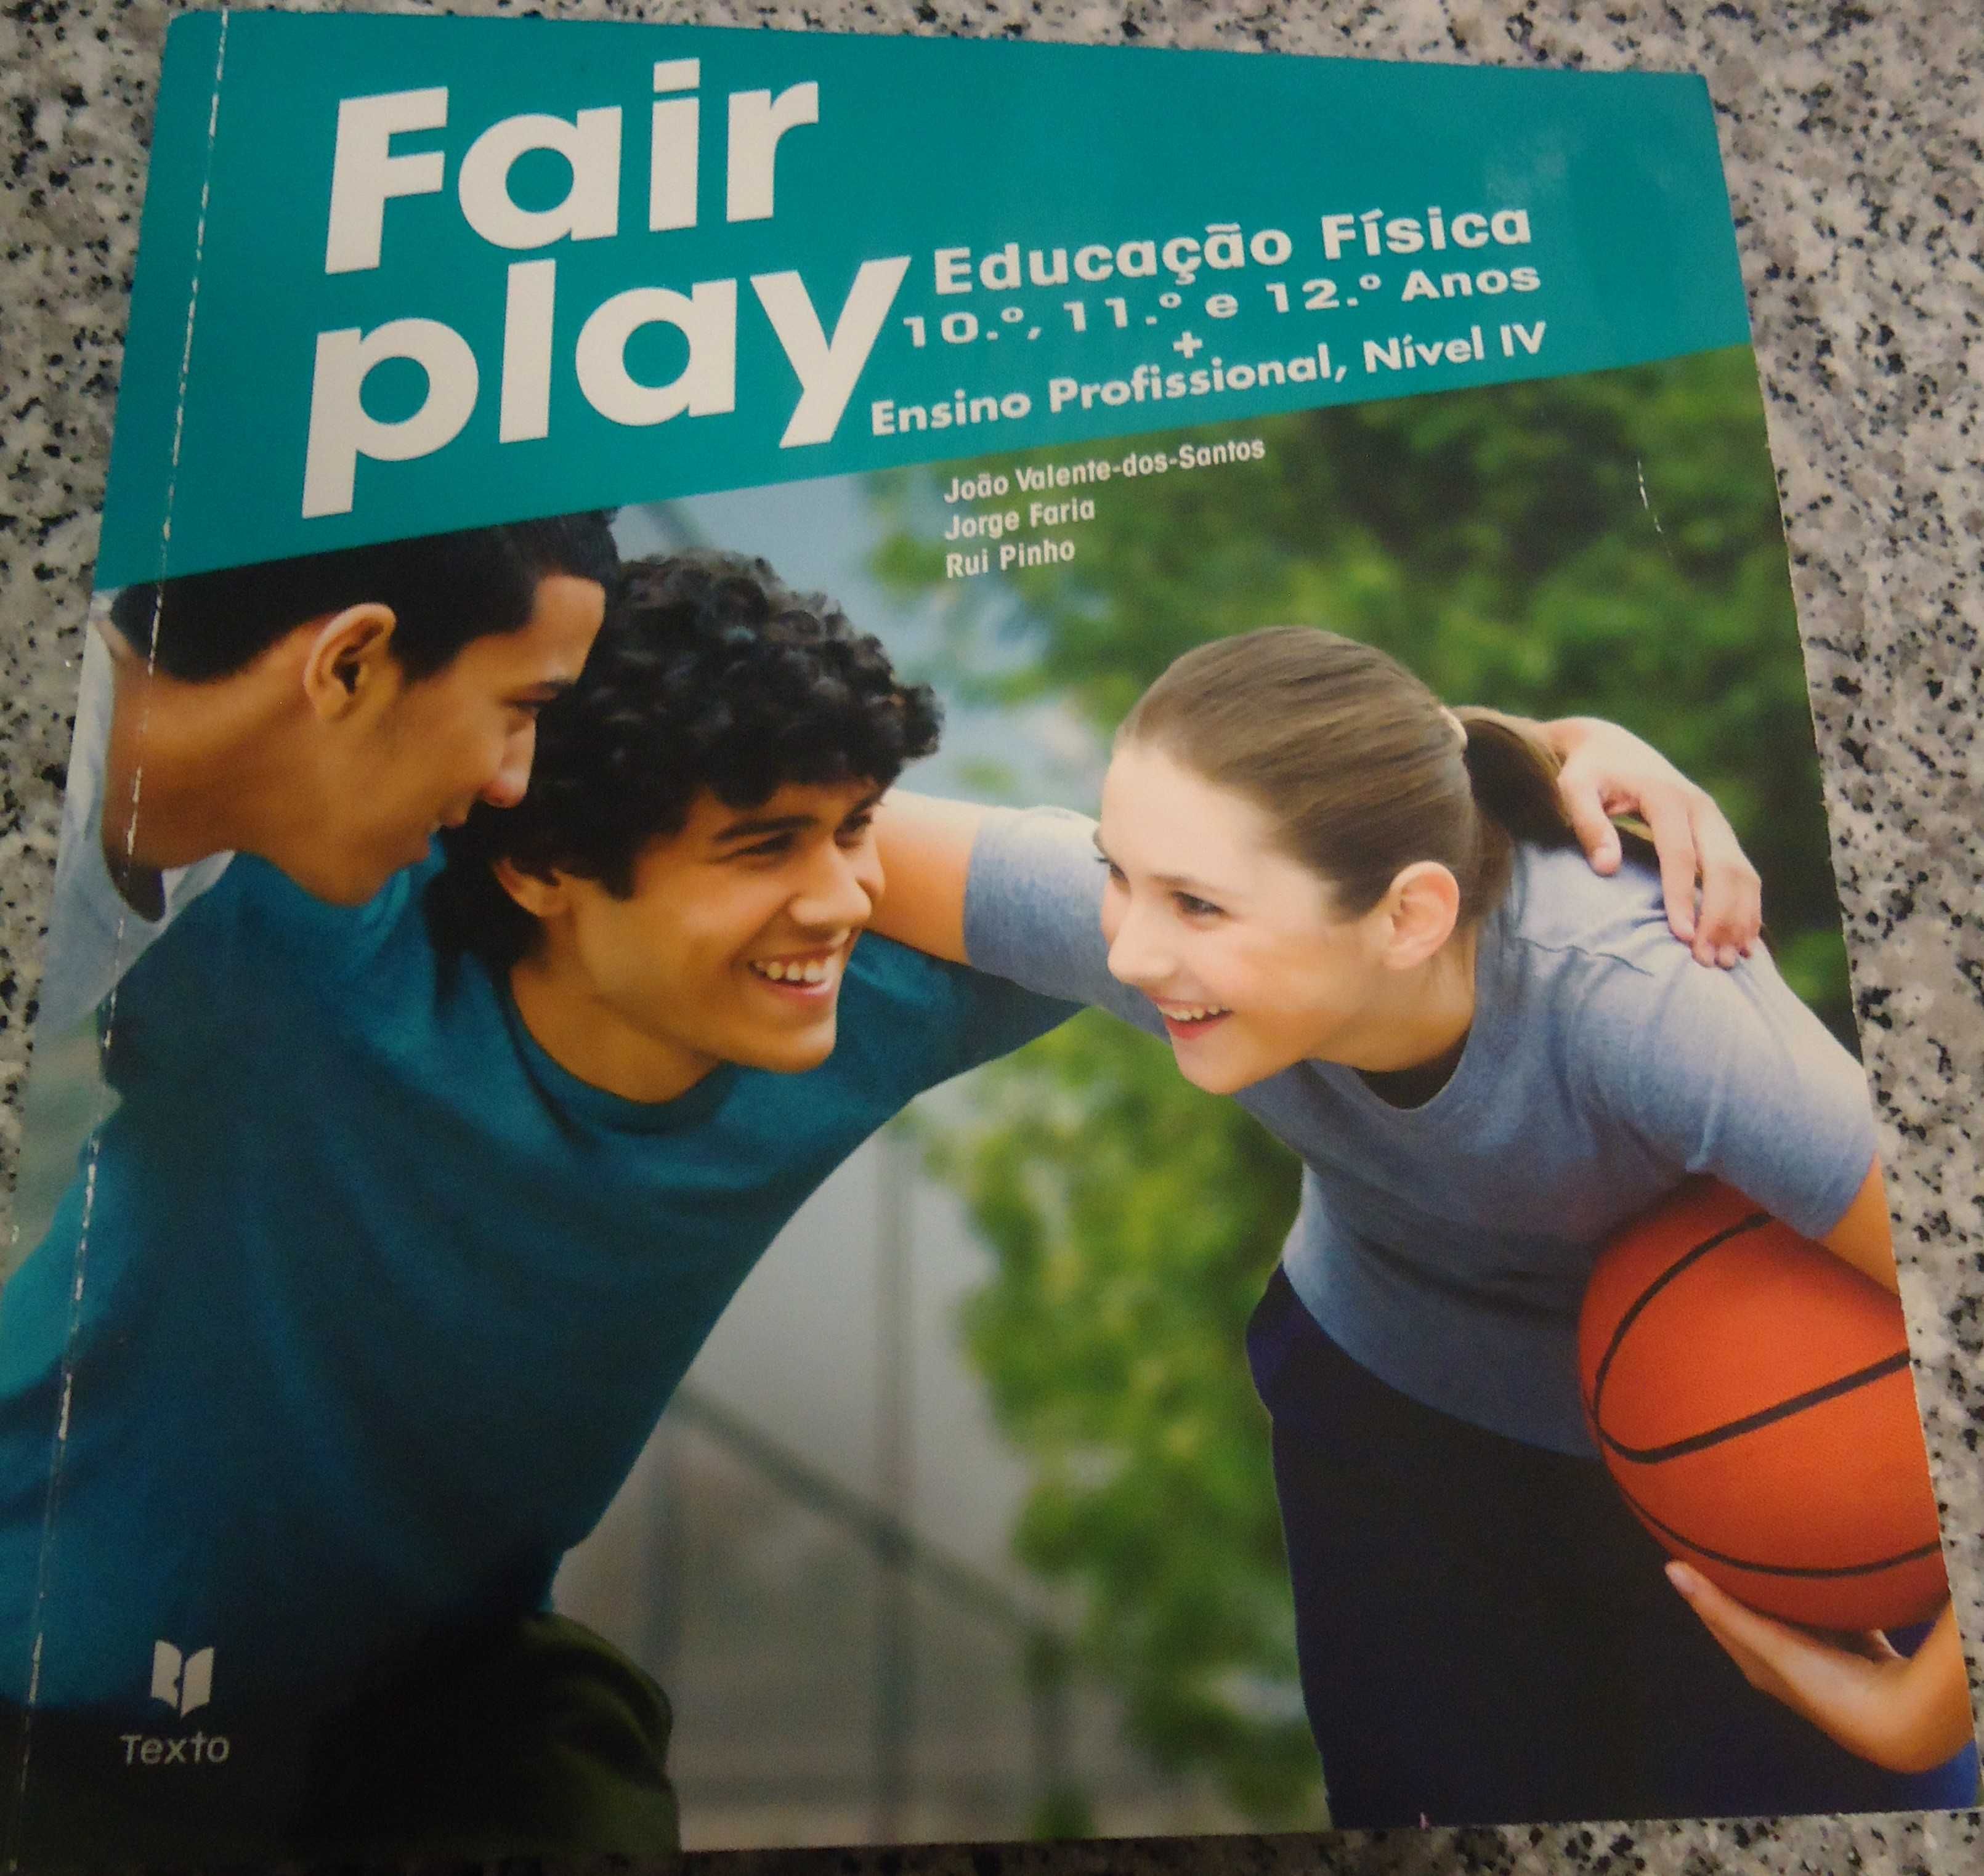 Manual Escolar Educação Física-Fair play 10º, 11º, 12º, E.Profissional